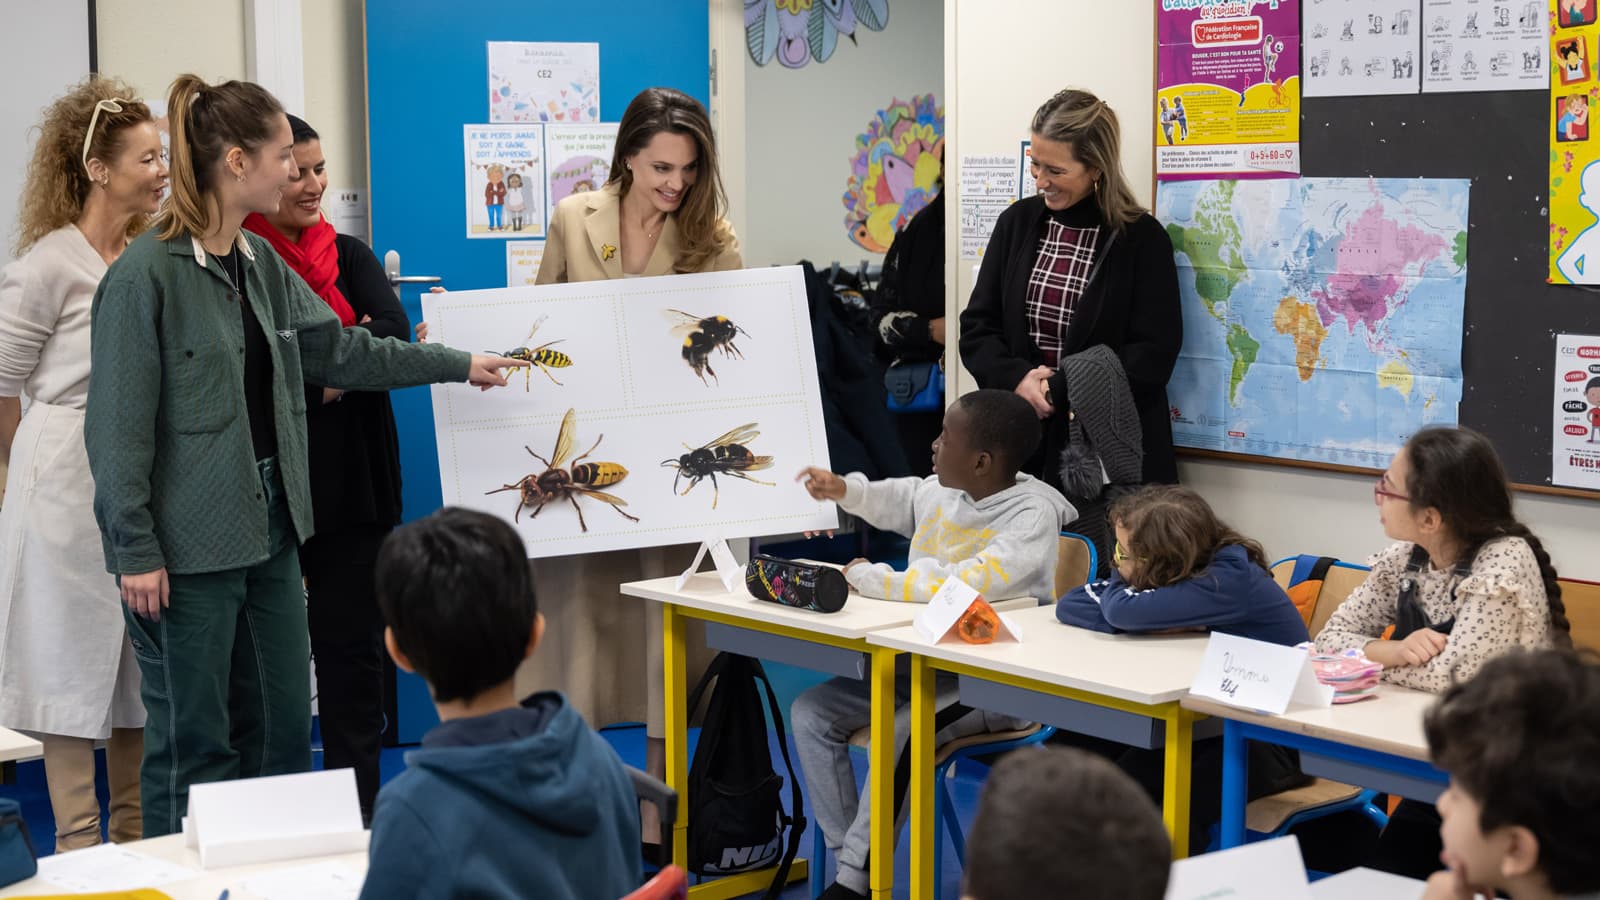 Angelina Jolie cùng Guerlain dạy cách nuôi ong cho trẻ em tại Pháp